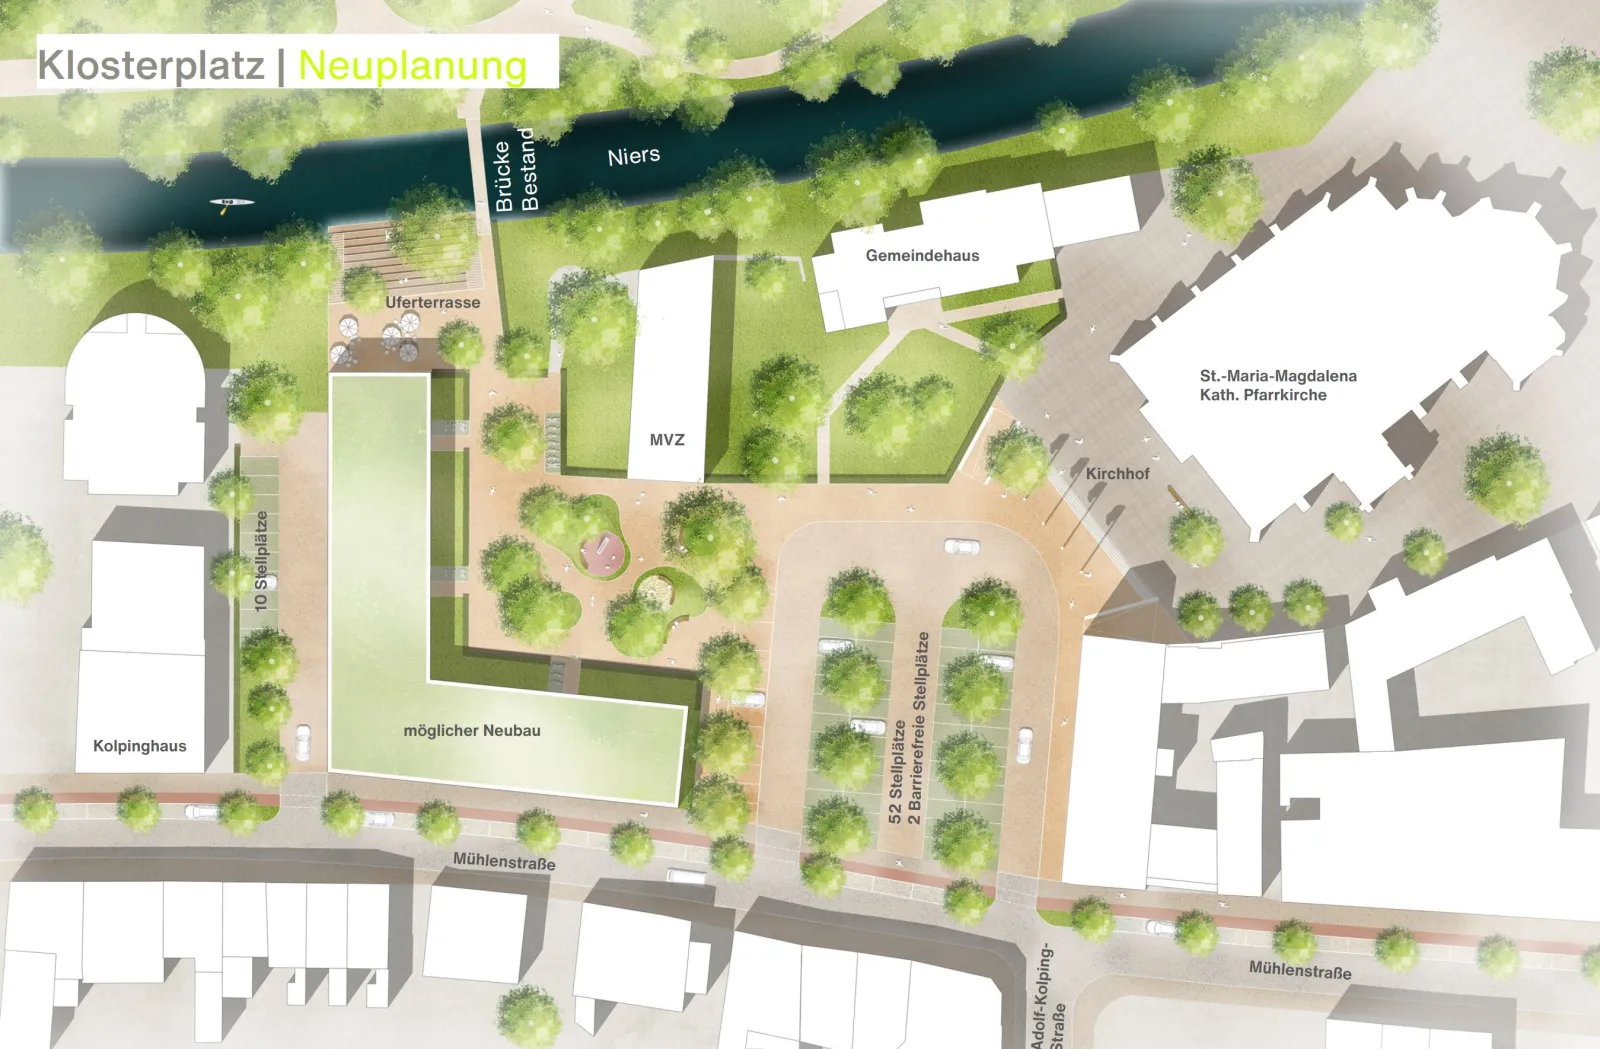 Idee für eine Umgestaltung des Klosterplatzes (Rechte: studio grüngrau)